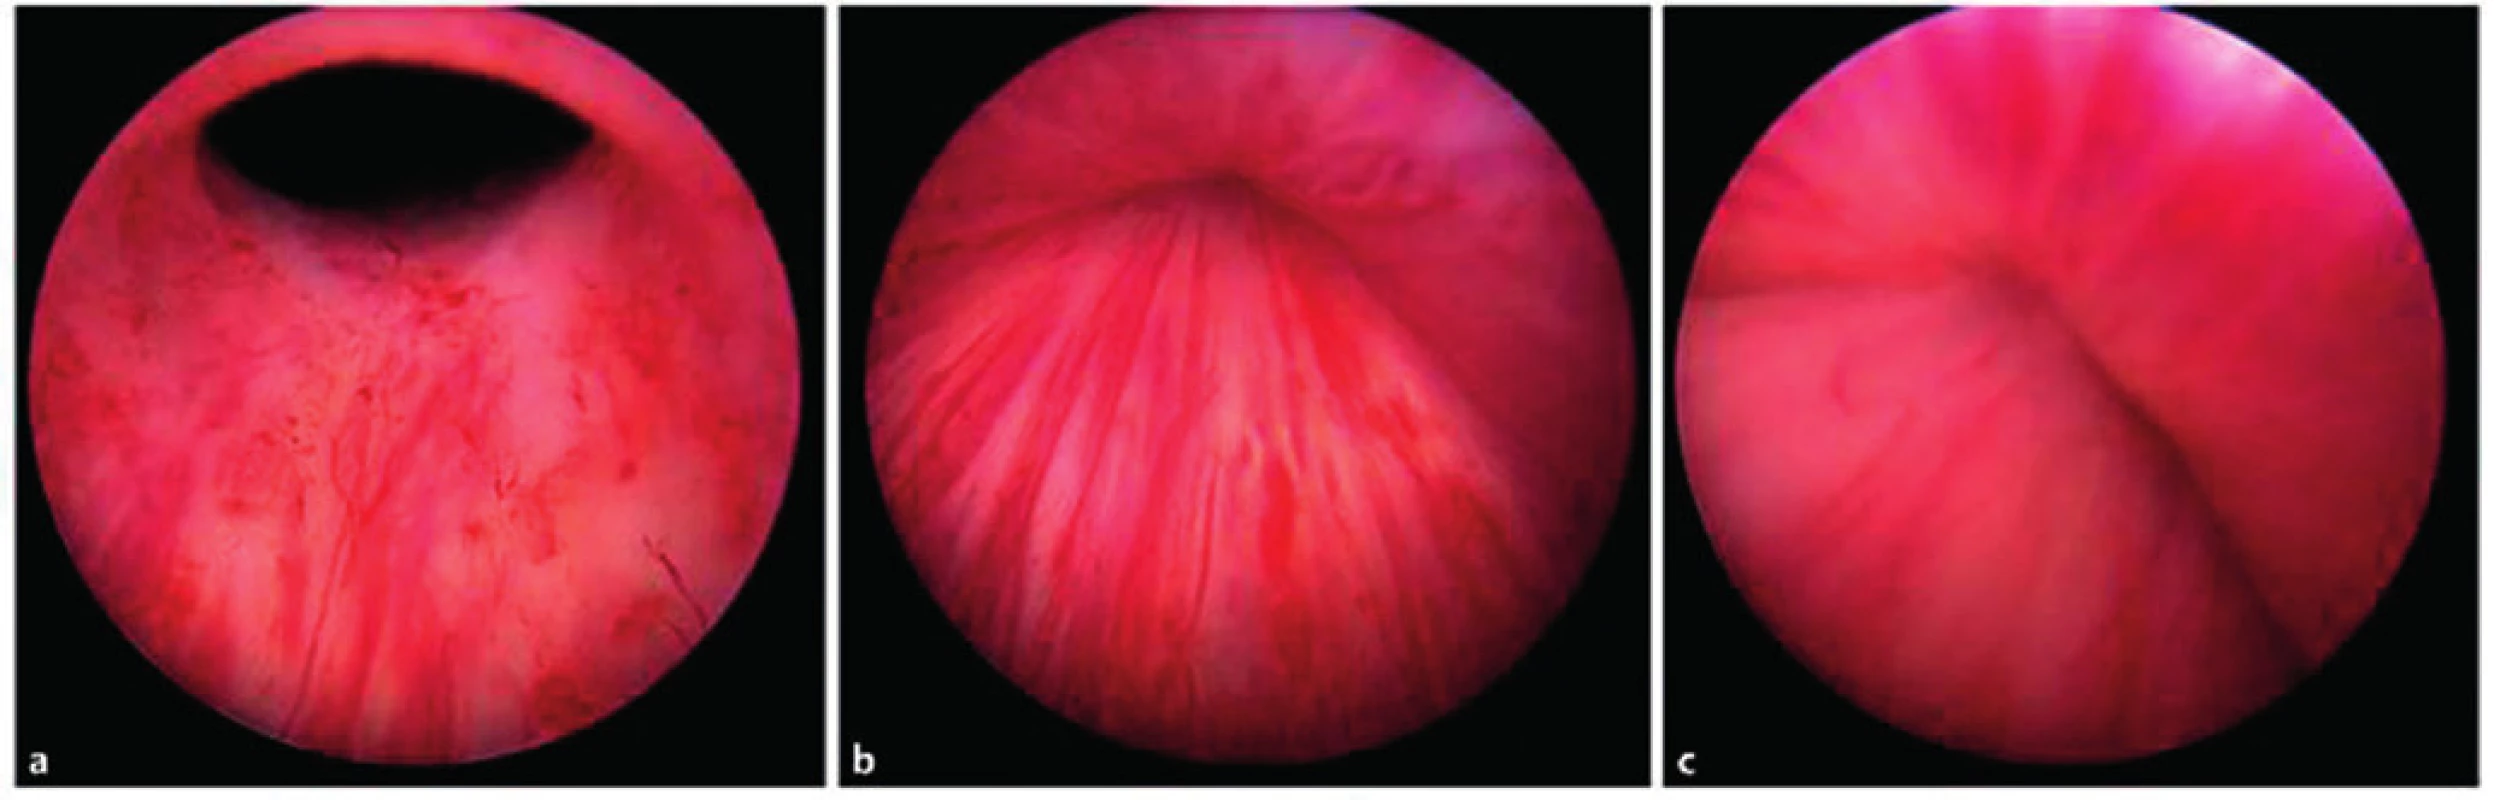 Peroperační endoskopické fotografie oblasti proximální uretry a hrdla močového měchýře, na nichž je patrný mechanismus účinku periuretrálních implantátů – obturace močové trubice